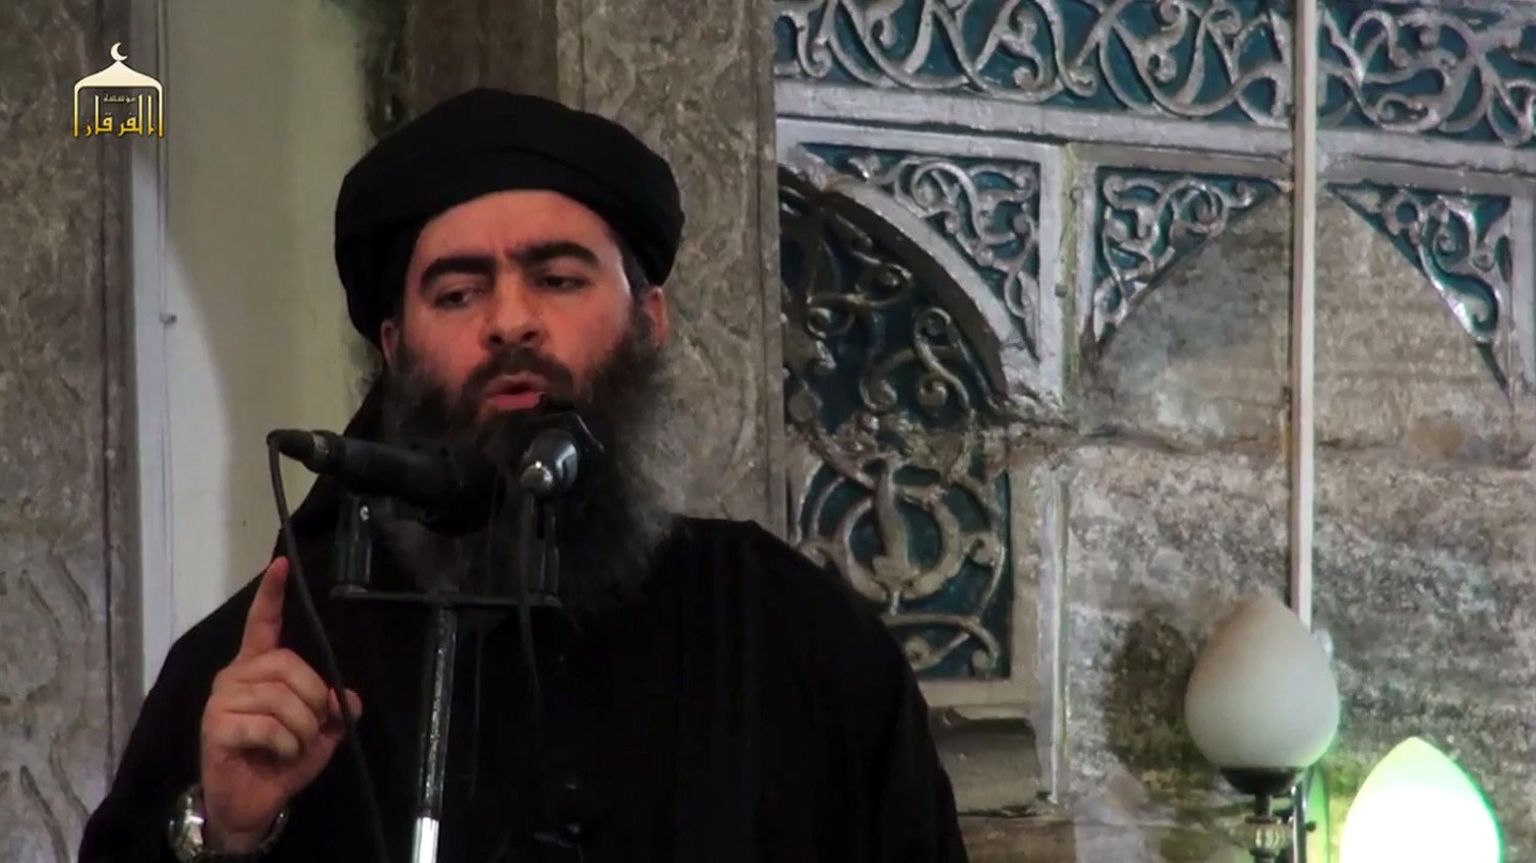 Kaader Islamiriigi 2014. aasta propagandavideost, millel on näha selle terrorirühmituse juhti Abu Bakr al-Baghdadit